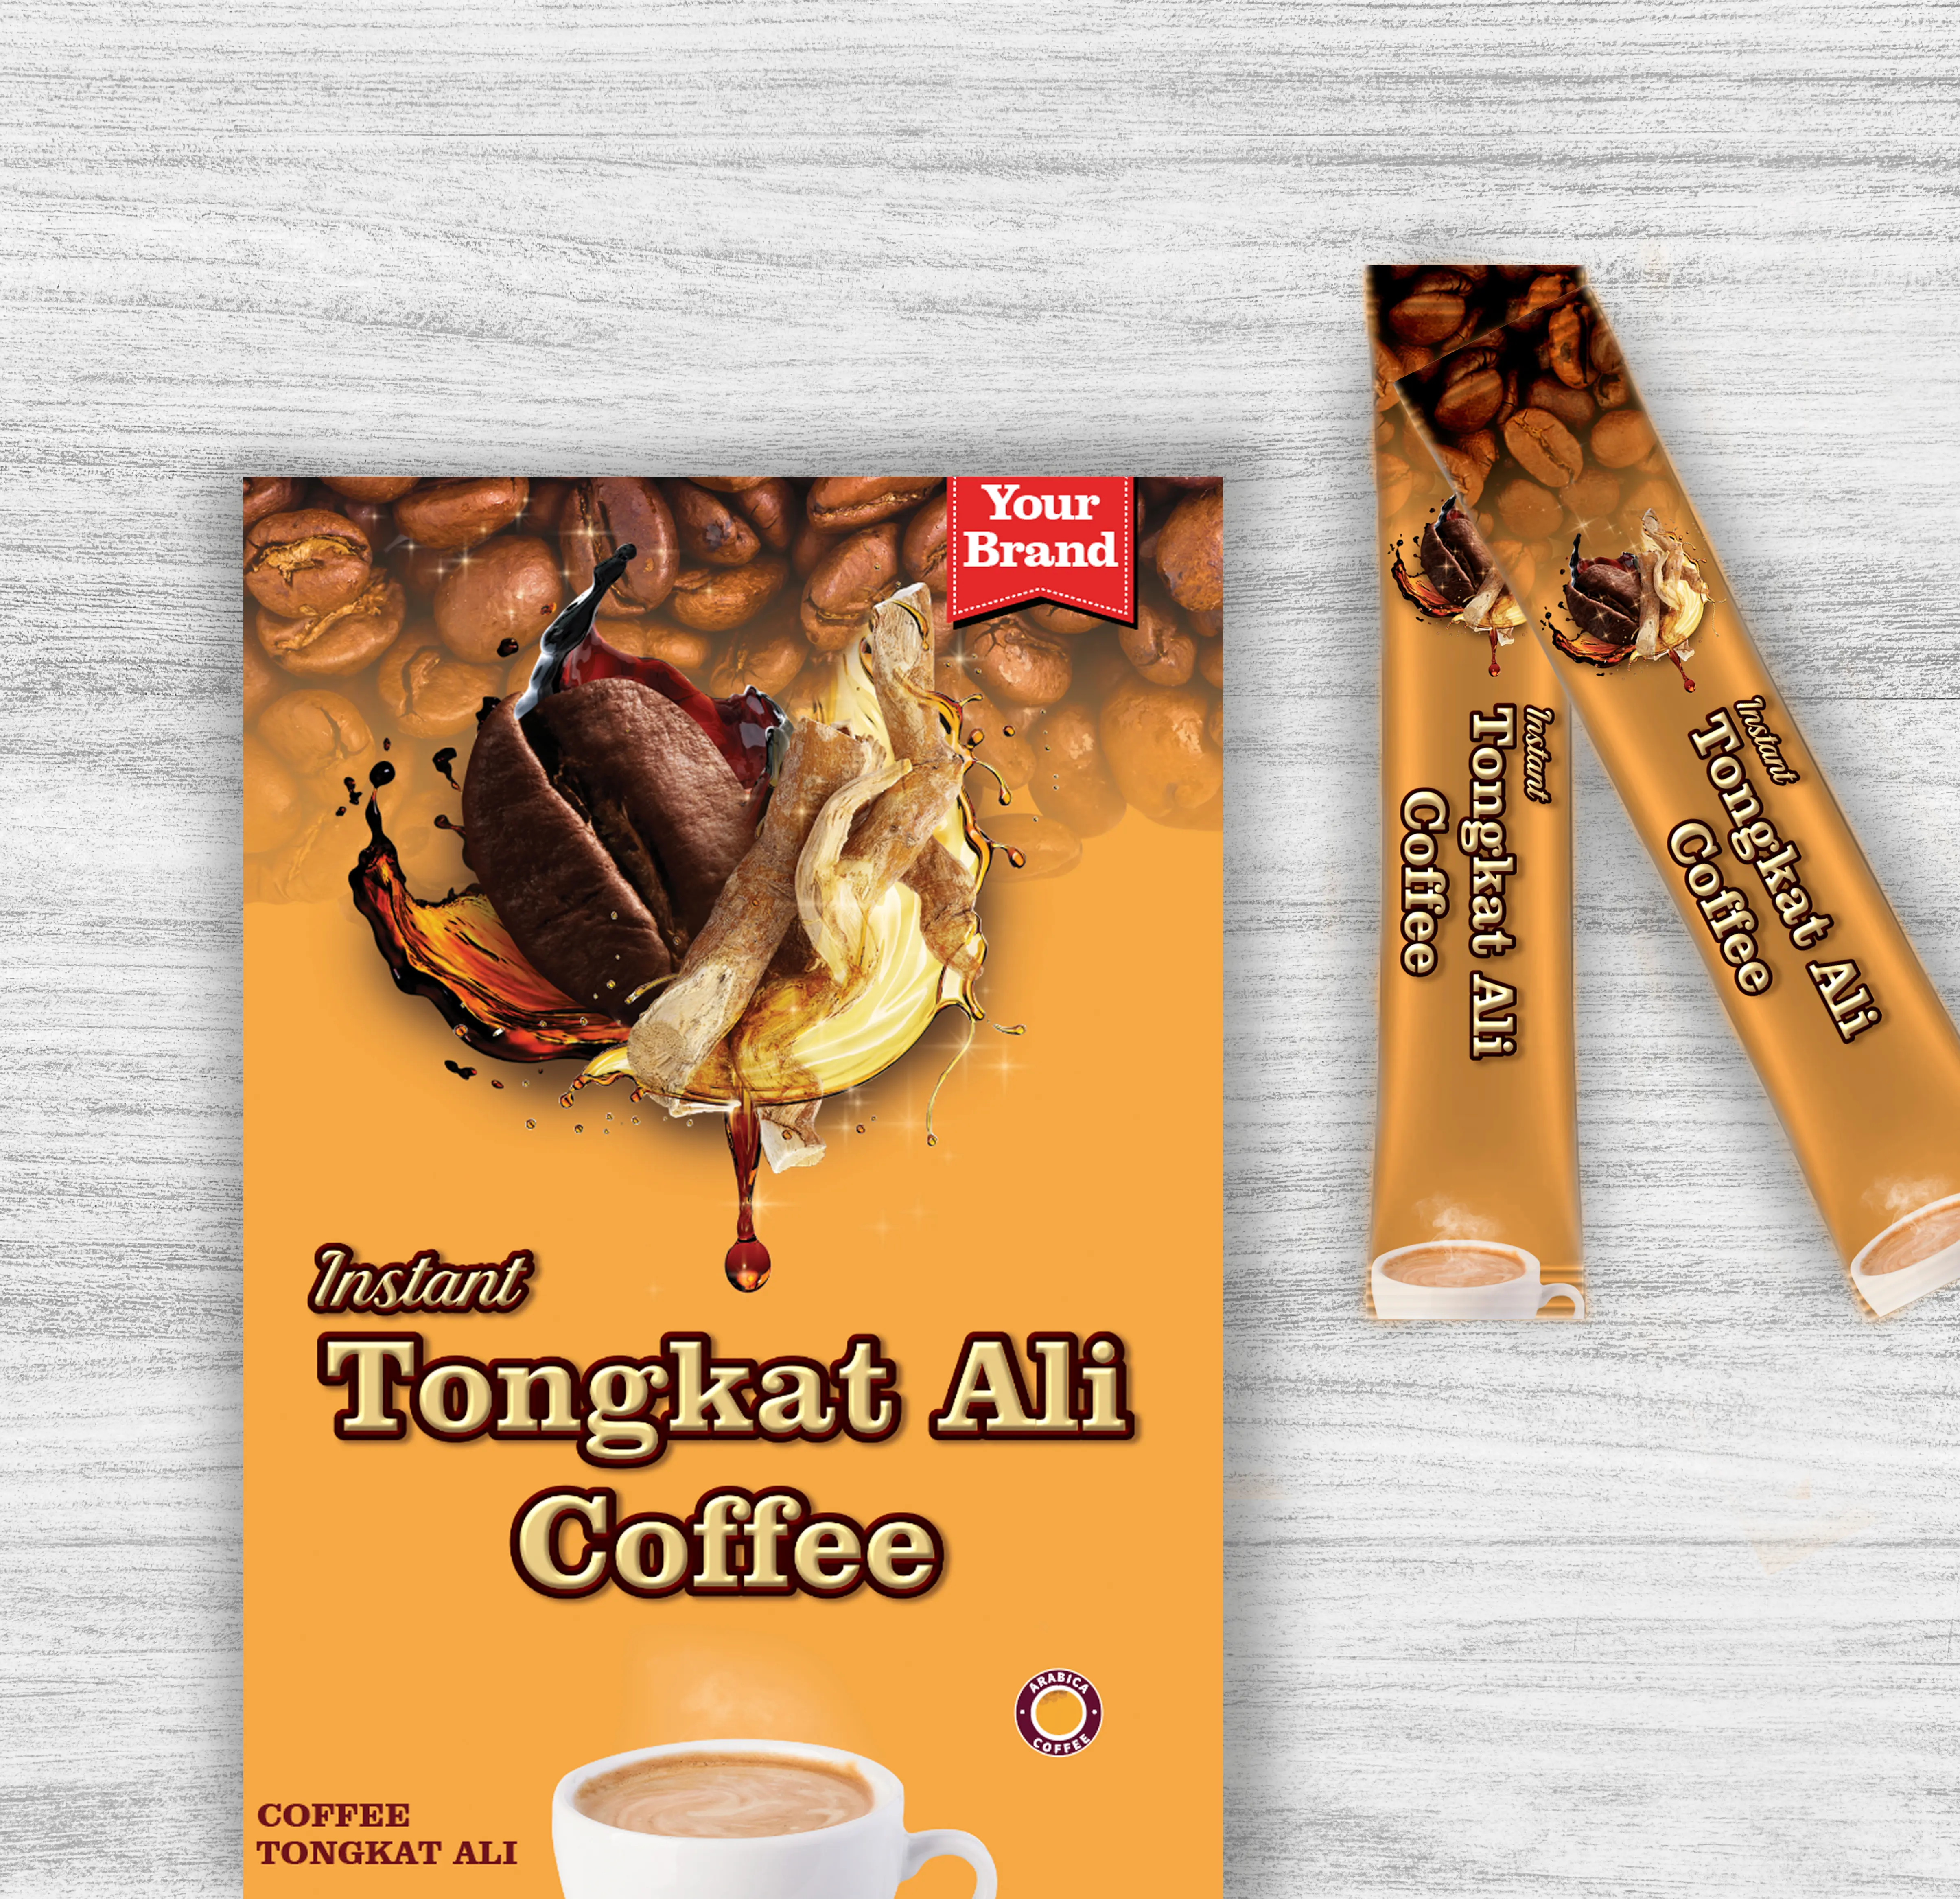 Rasa makanan instan Tongkat Ali pelangsing kopi dan meningkatkan energi alami dan mendukung kekebalan efek cepat kemasan OEM